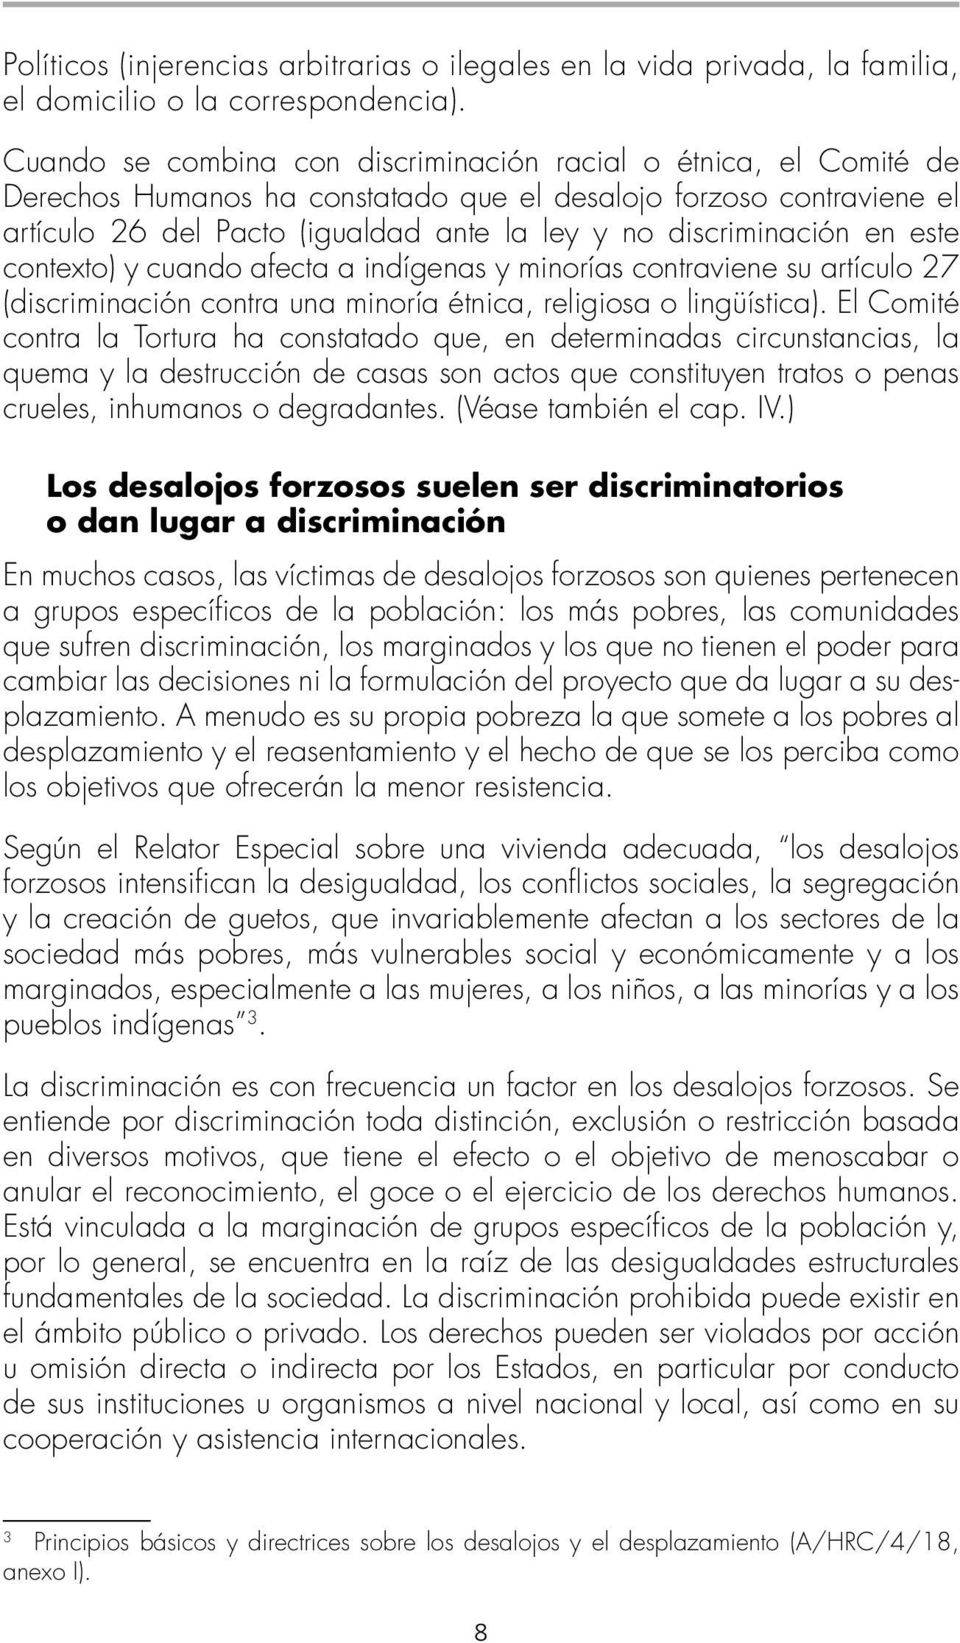 discriminación en este contexto) y cuando afecta a indígenas y minorías contraviene su artículo 27 (discriminación contra una minoría étnica, religiosa o lingüística).